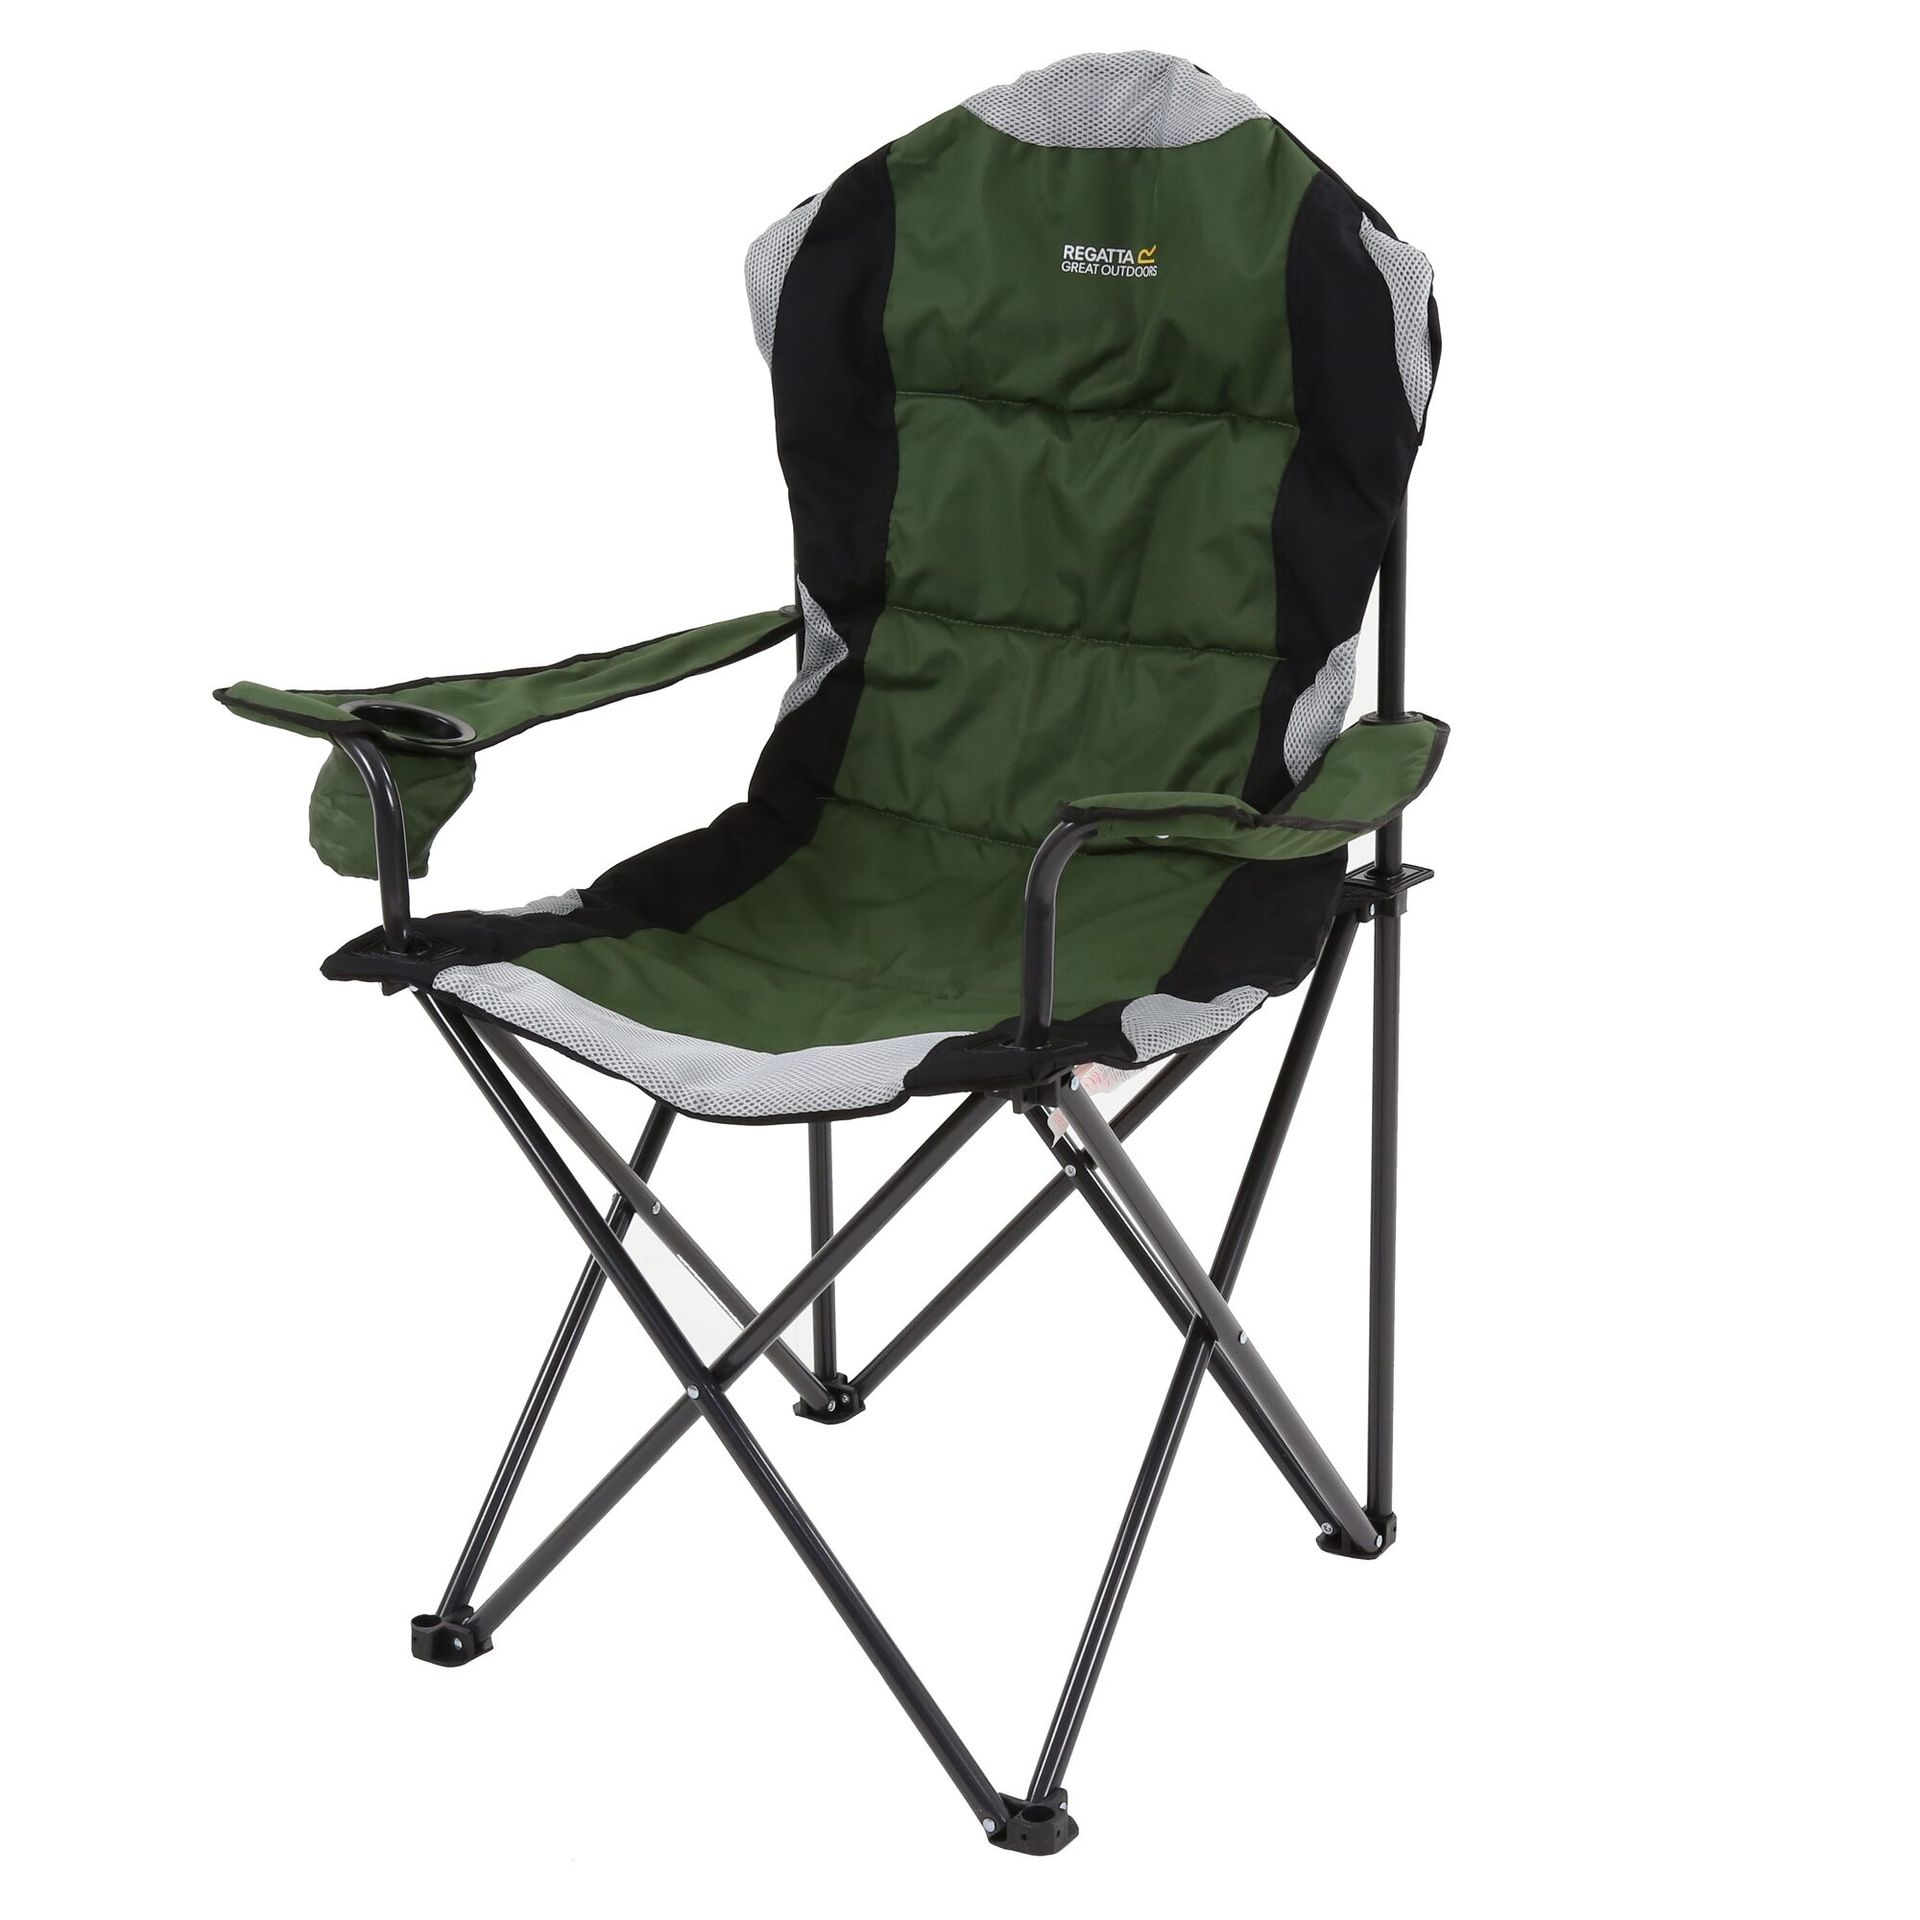 Regatta Krzesło Turystyczne Kruza Chair 110x90x56cm Zielono-czarny, Rozmiar: one Size